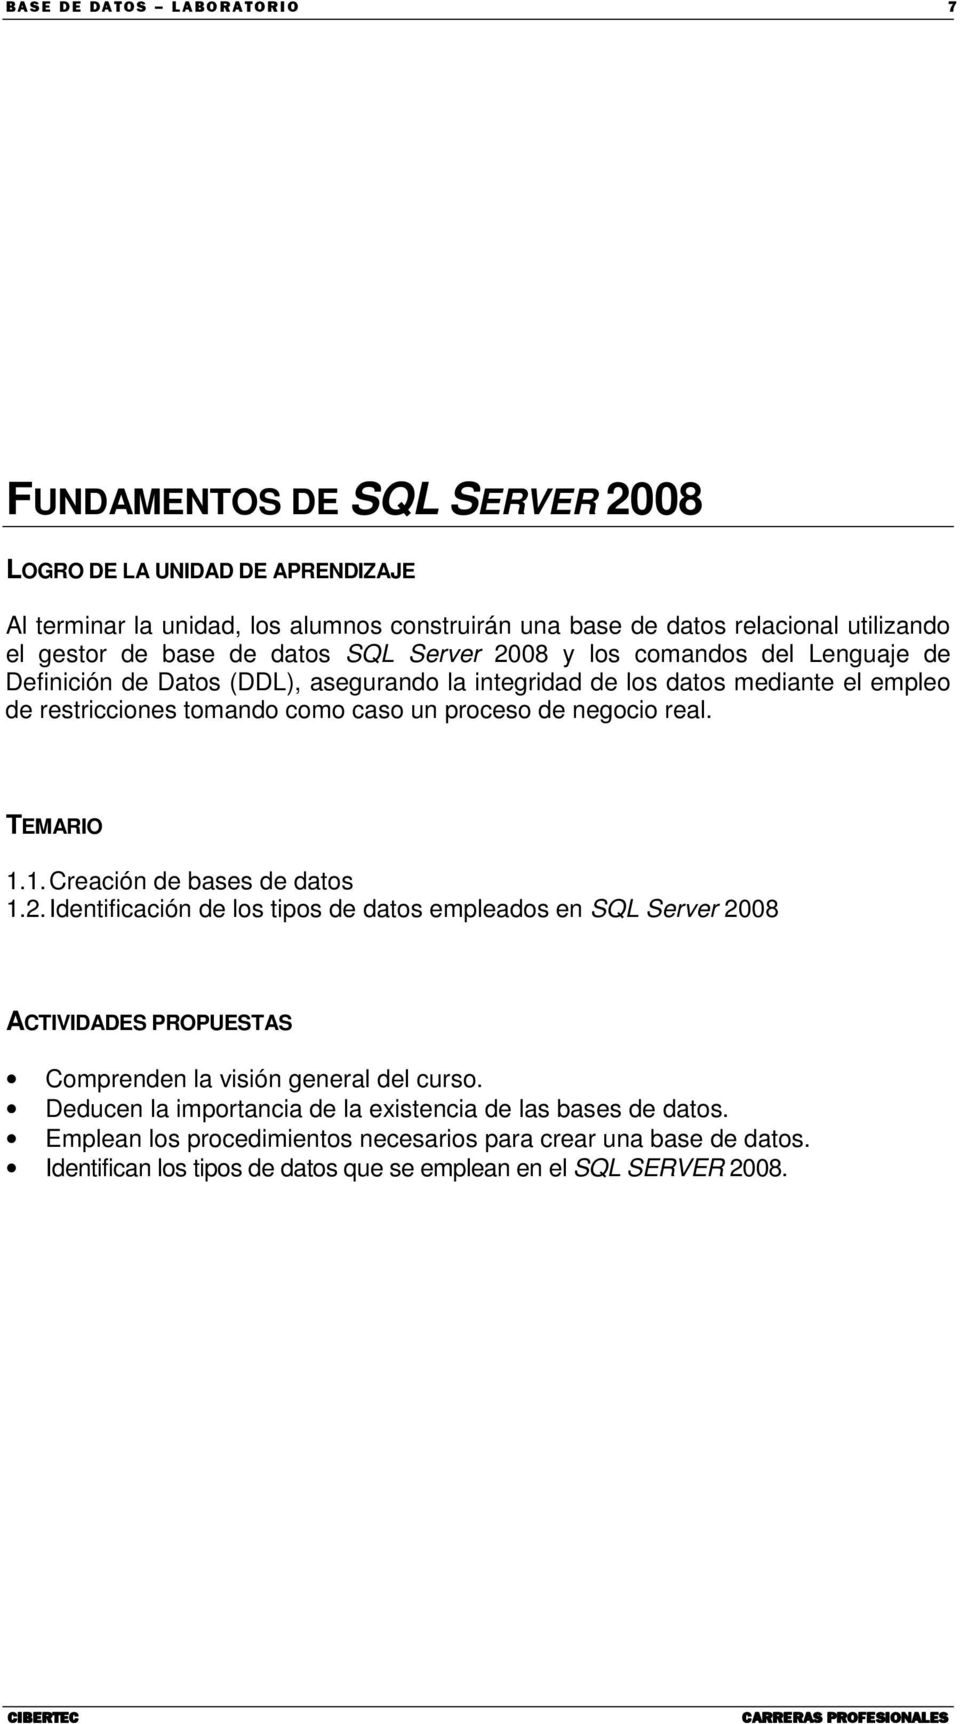 proceso de negocio real. TEMARIO 1.1. Creación de bases de datos 1.2. Identificación de los tipos de datos empleados en SQL Server 2008 ACTIVIDADES PROPUESTAS Comprenden la visión general del curso.